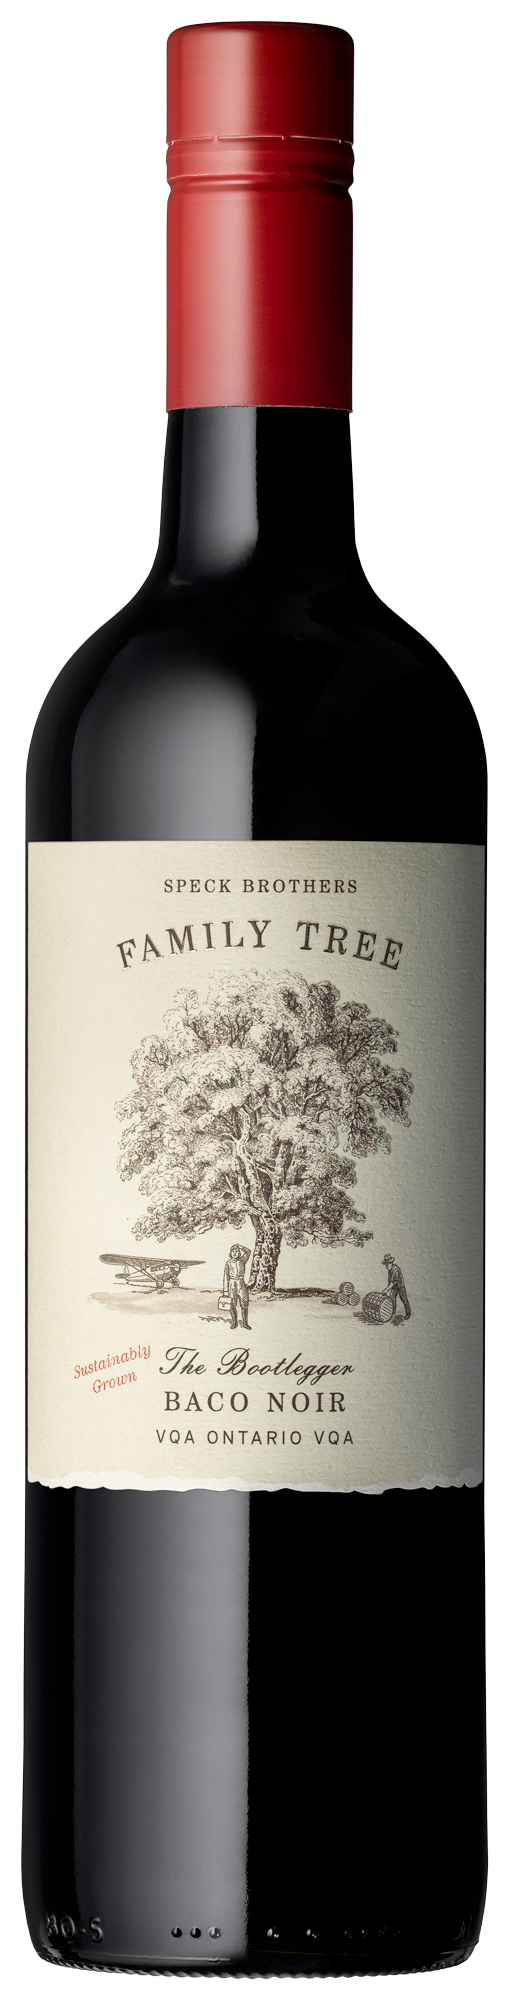 Speck Bros. Family Tree ‘The Bootlegger’ Baco Noir, VQA Ontario